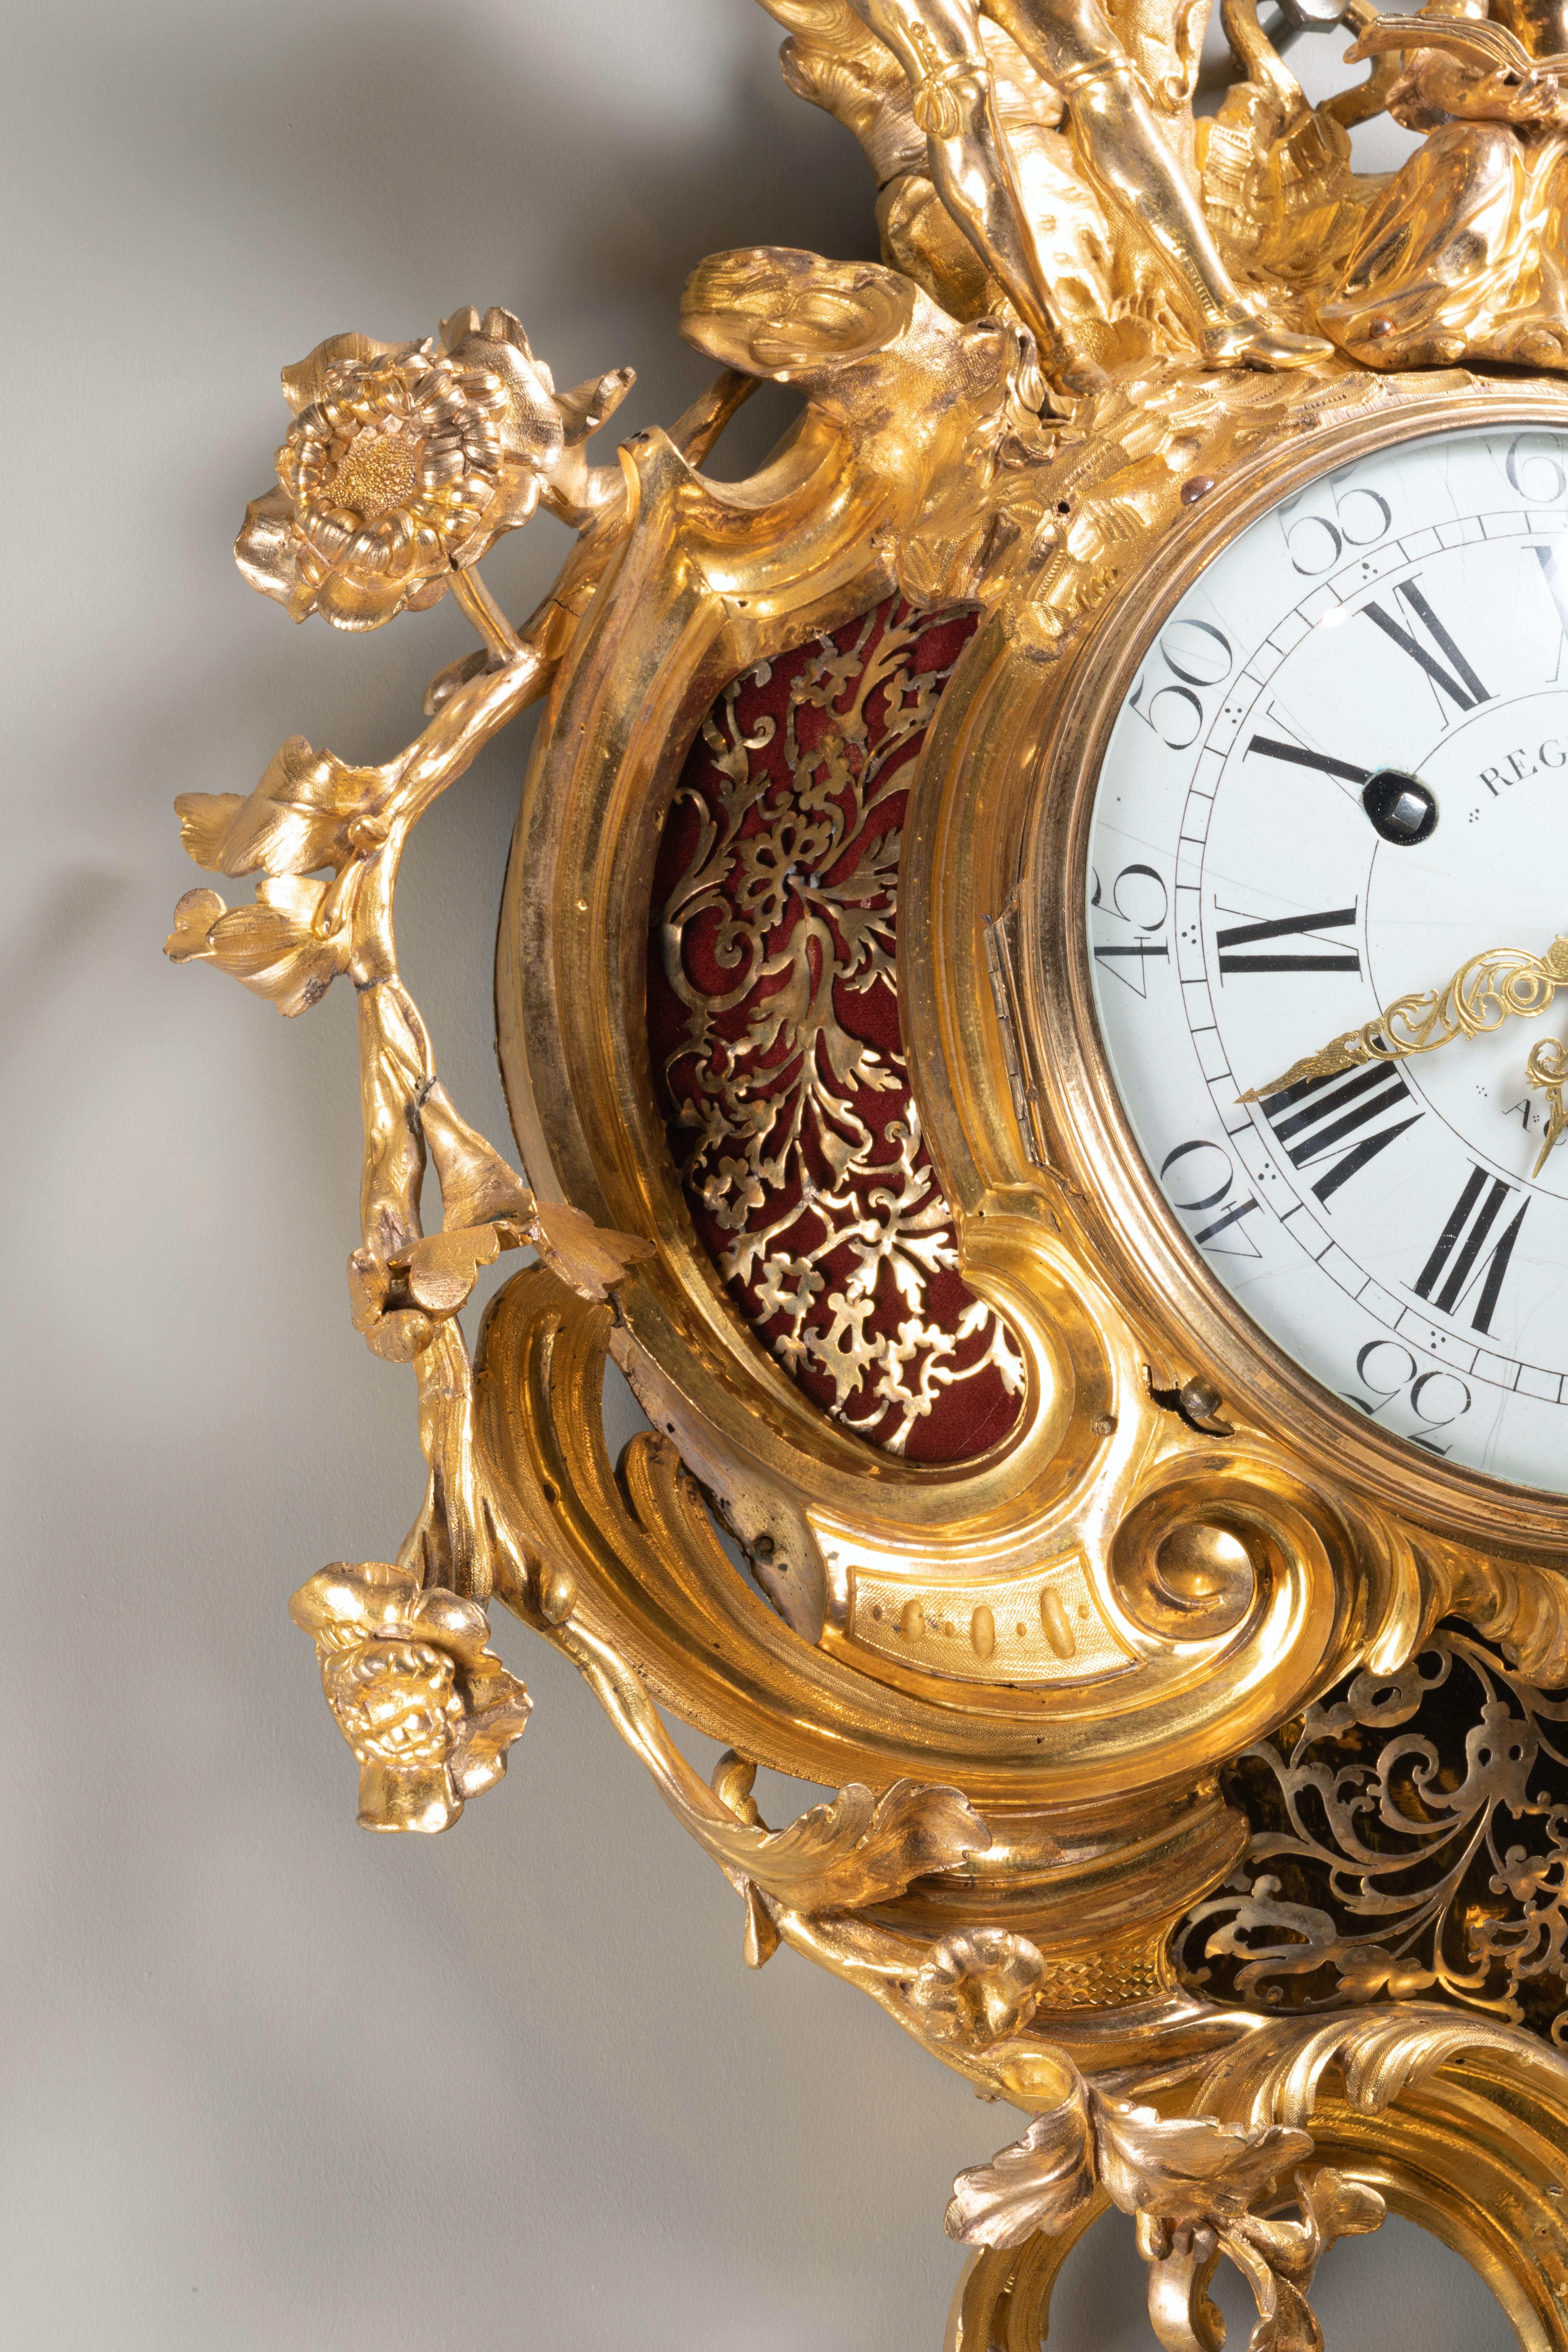 Une impressionnante horloge à cartel ornée de musiciens
Bronze doré
Période Louis XV, vers 1760

Mecan par J. B. Regnauld (1733-1809) horloger à Châlons sur Marne
Bronze doré attribué à Jean-Joseph de Saint-Germain (1719-1791)
Excellent état